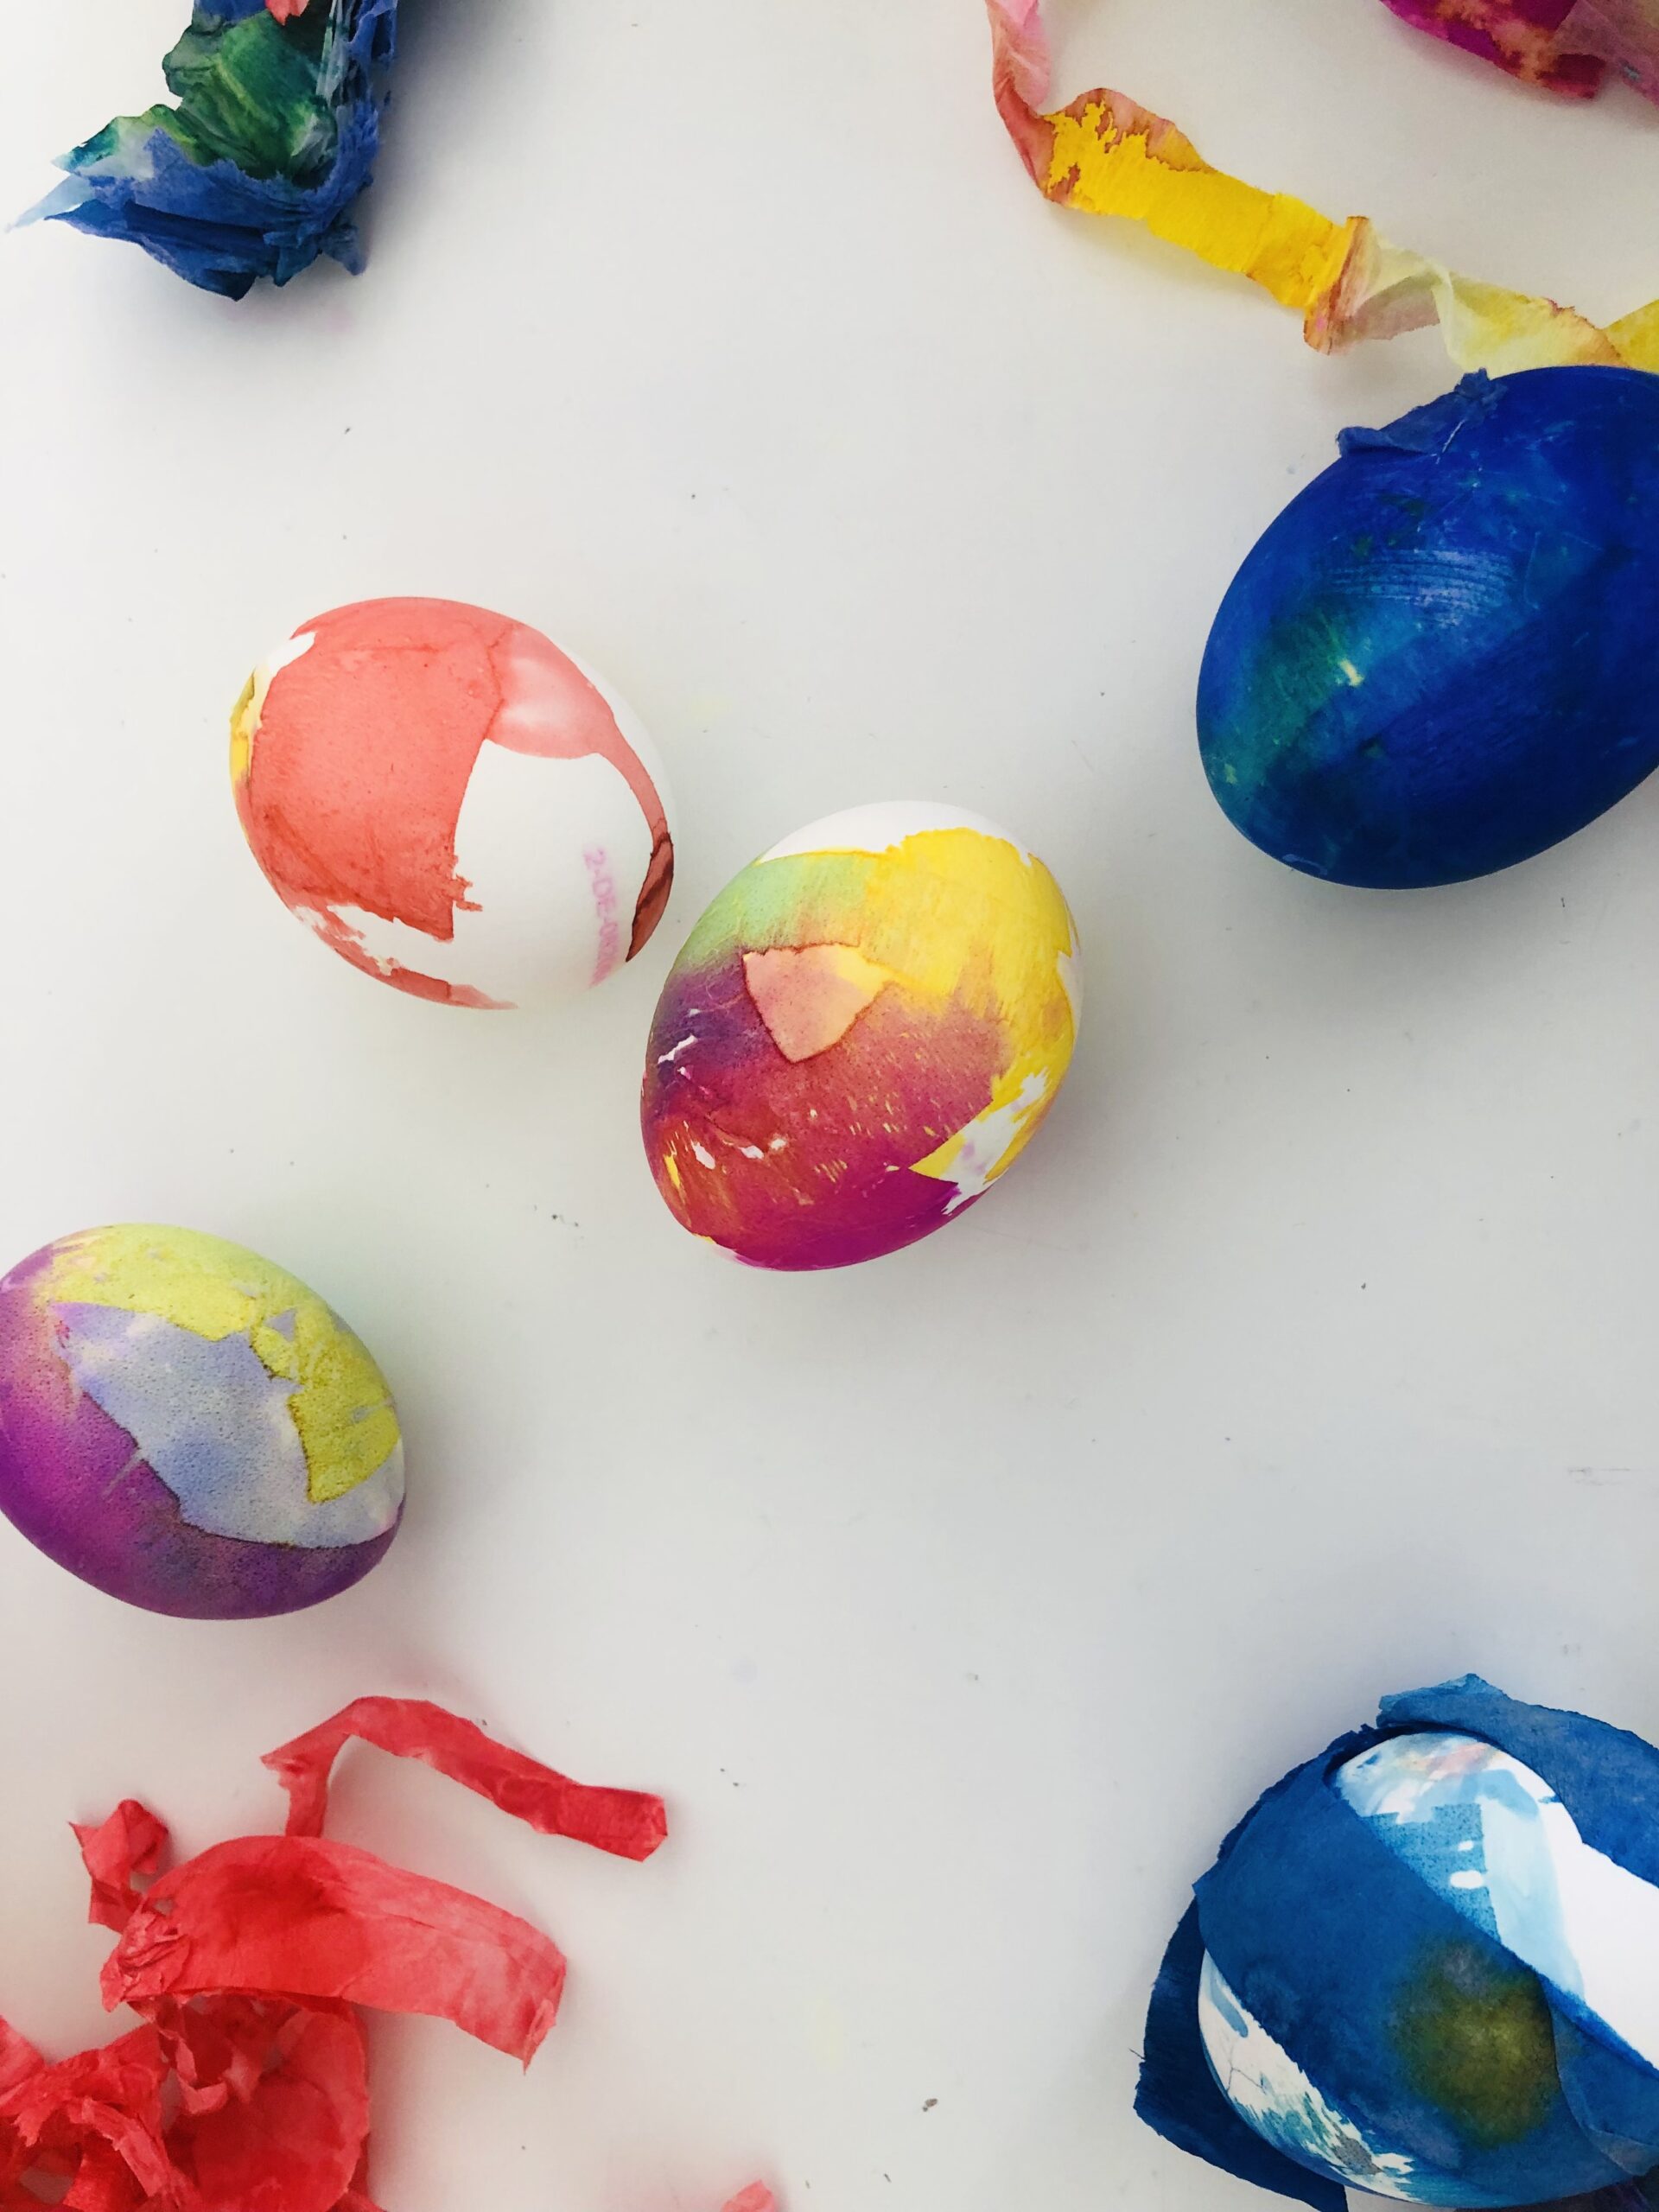 Bild zum Schritt 10 für das Bastel- und DIY-Abenteuer für Kinder: 'Zum Vorschein kommen wunderschön eingefärbte Eier.'